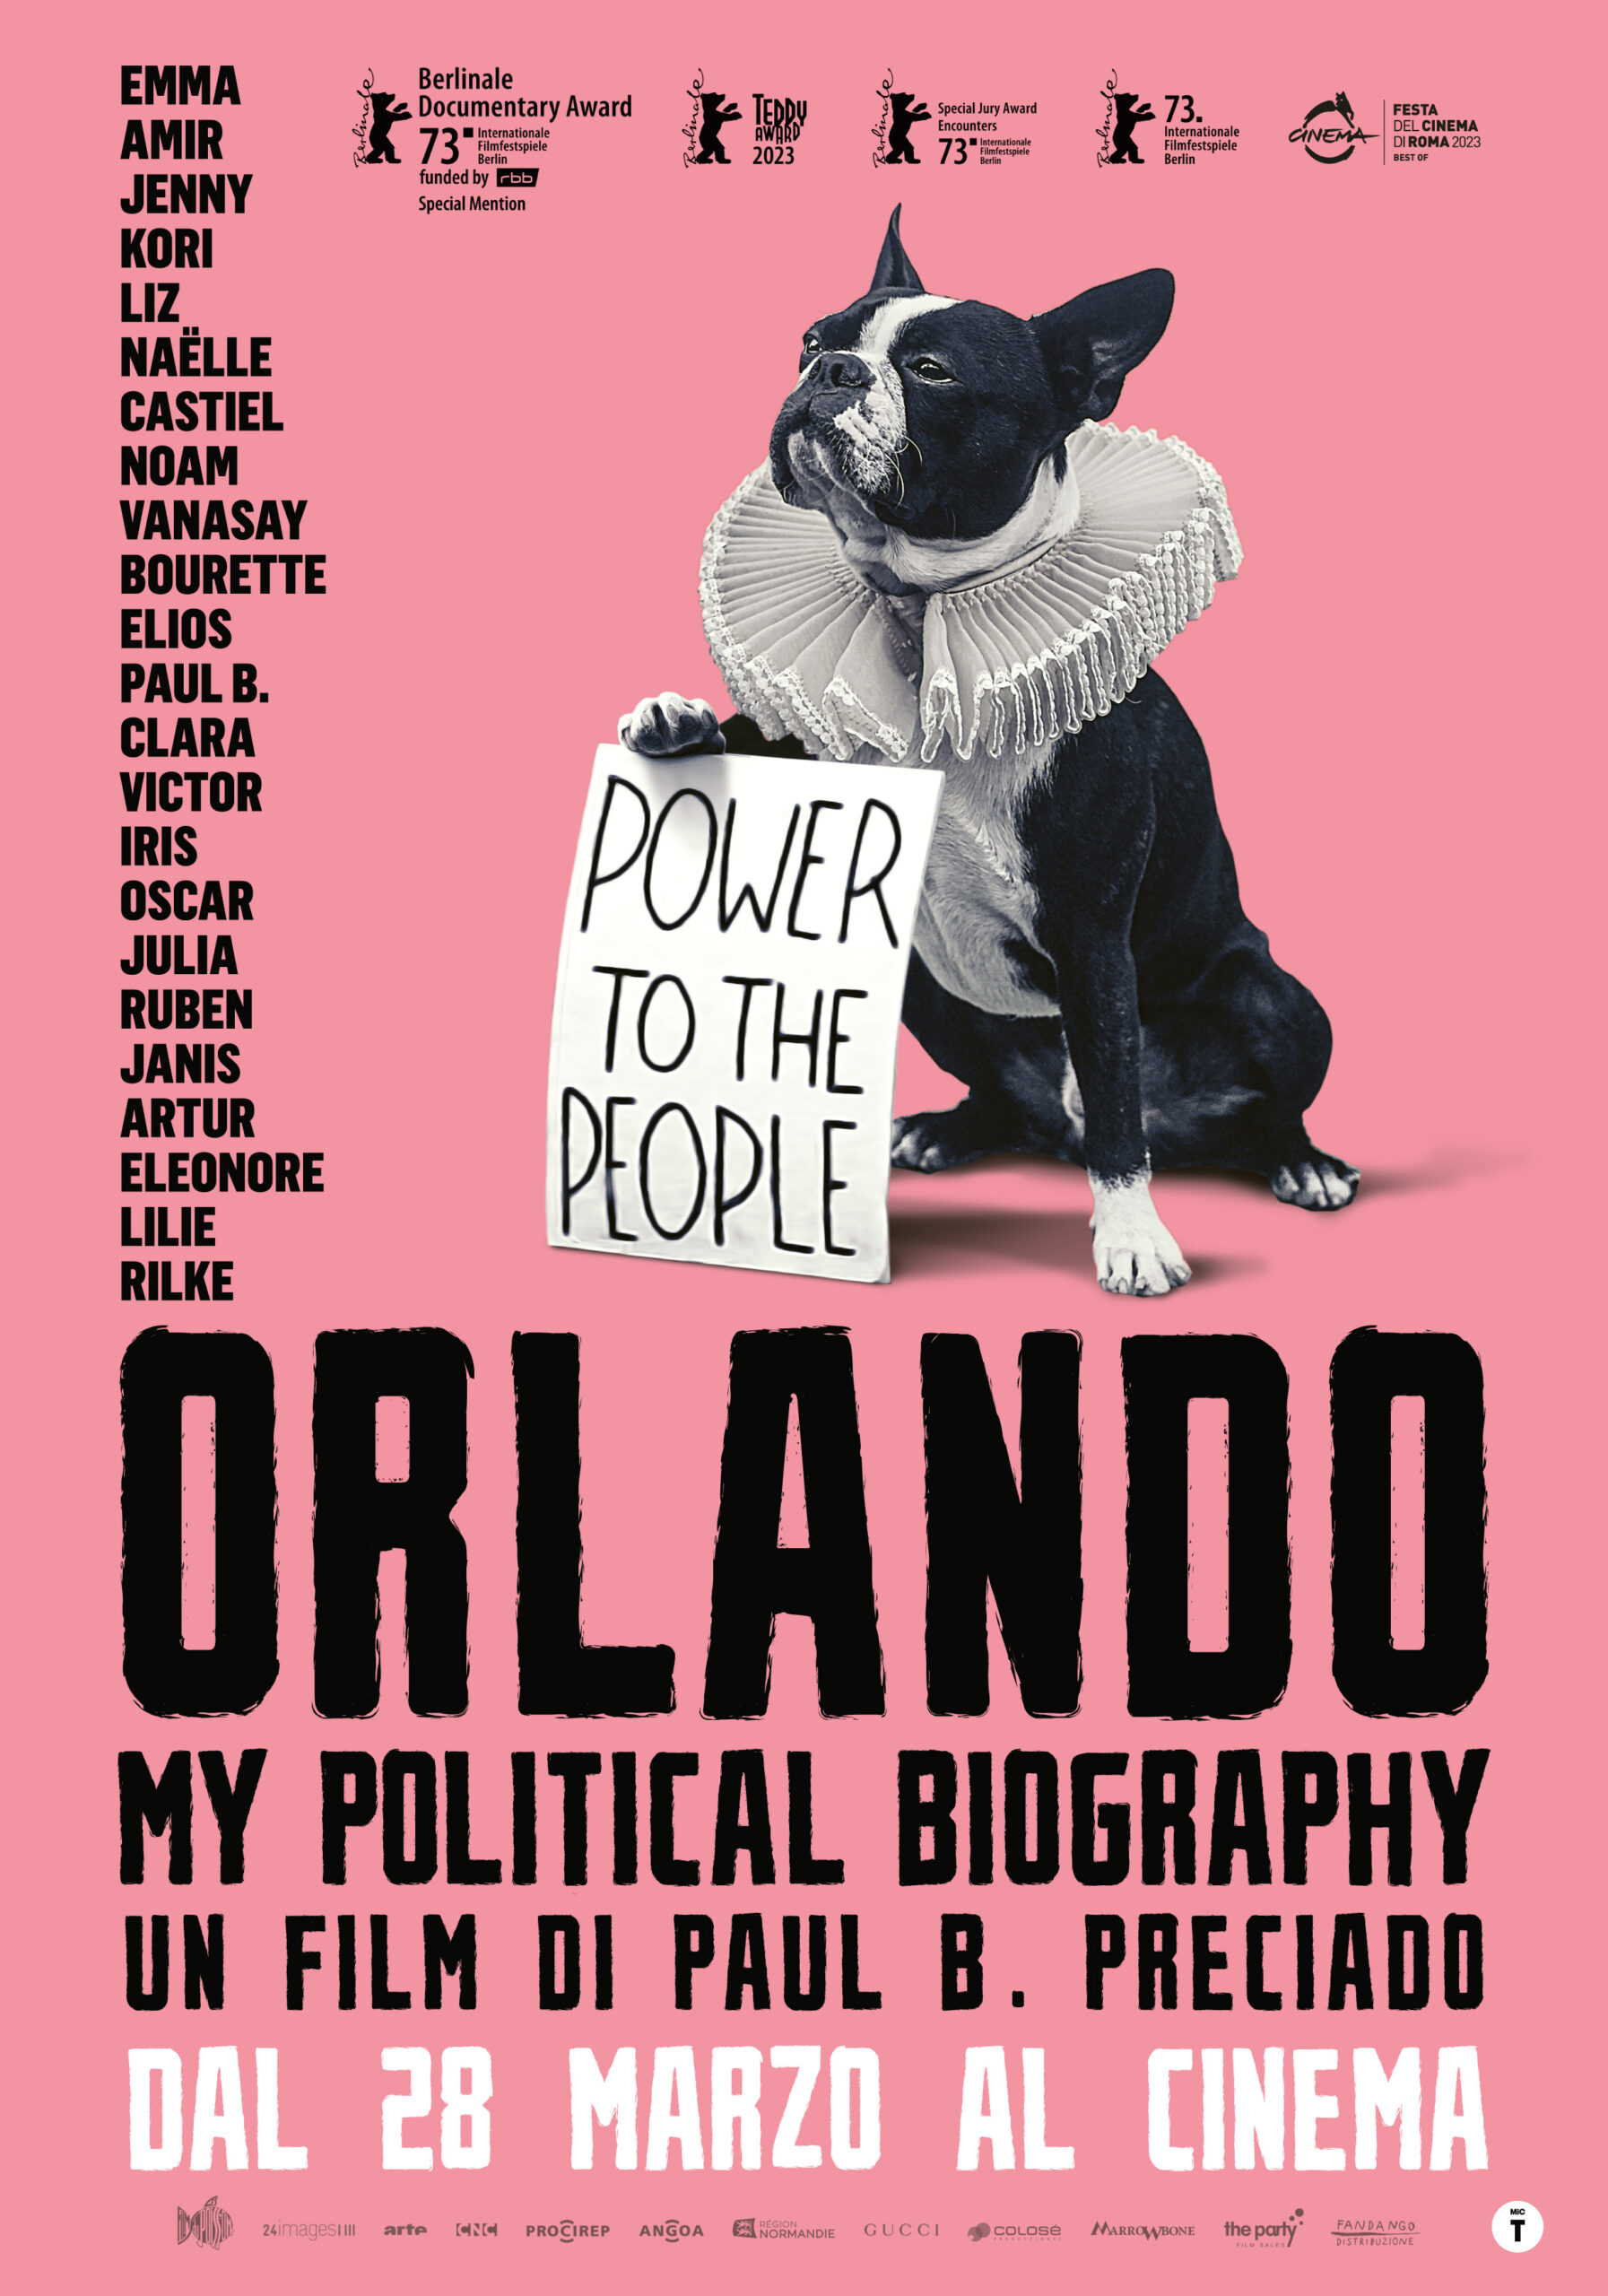 Orlando, my political Biography, dal 28 Marzo al cinema con Fandango. Ecco il TRAILER